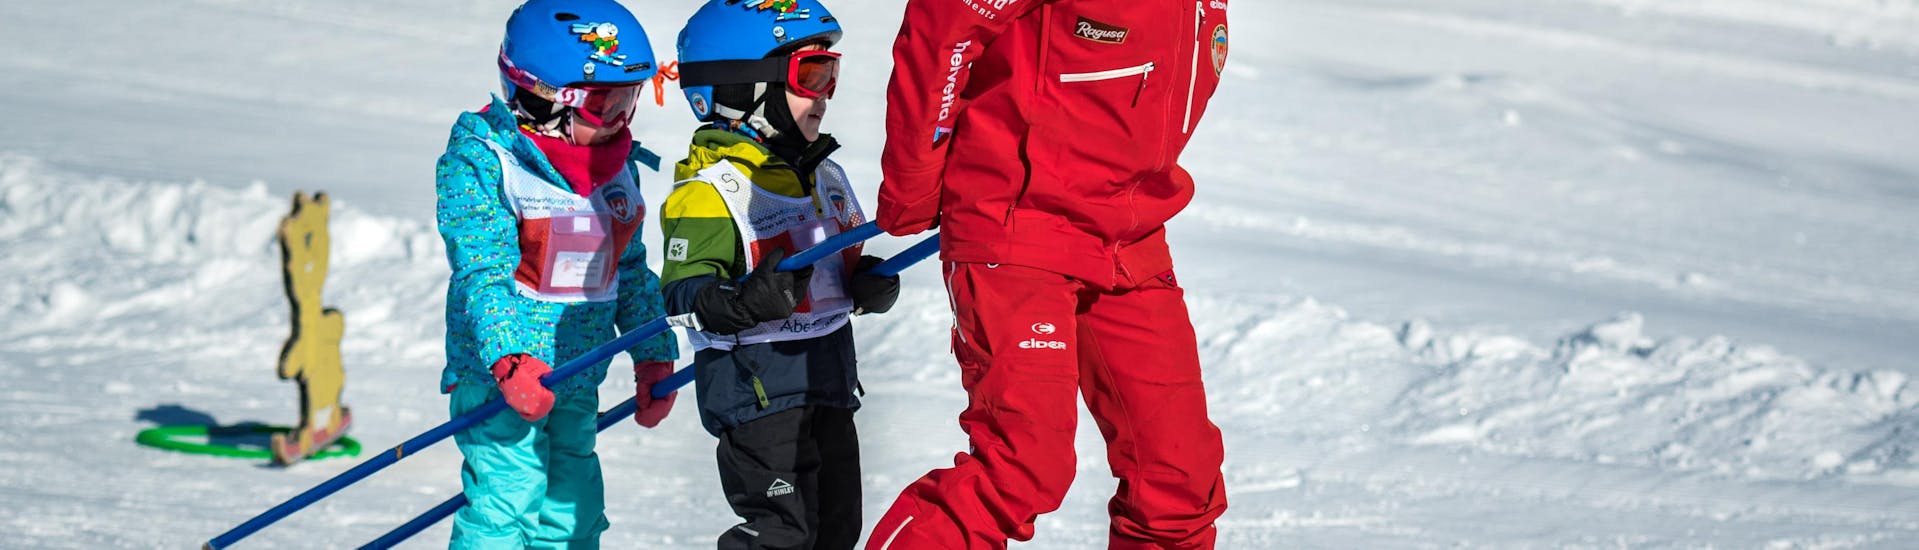 Ein Skilehrer der Schweizer Skischule Grindelwald zieht während einem privaten Kinder-Skikurs für alle Levels zwei kleine Kinder hinter sich her.